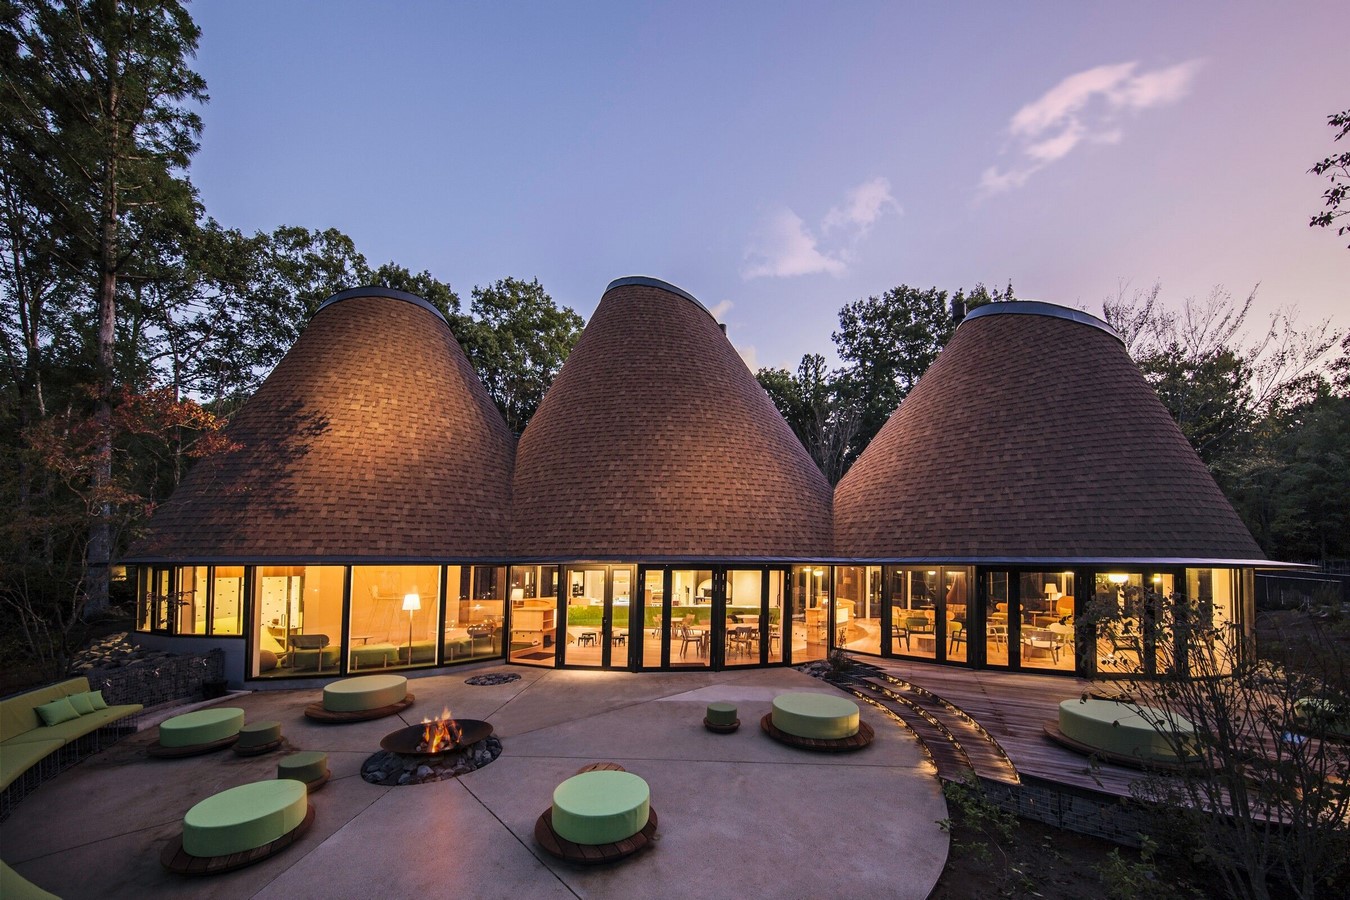 PokoPoko Club House by Klein Dytham architecture - Sheet7